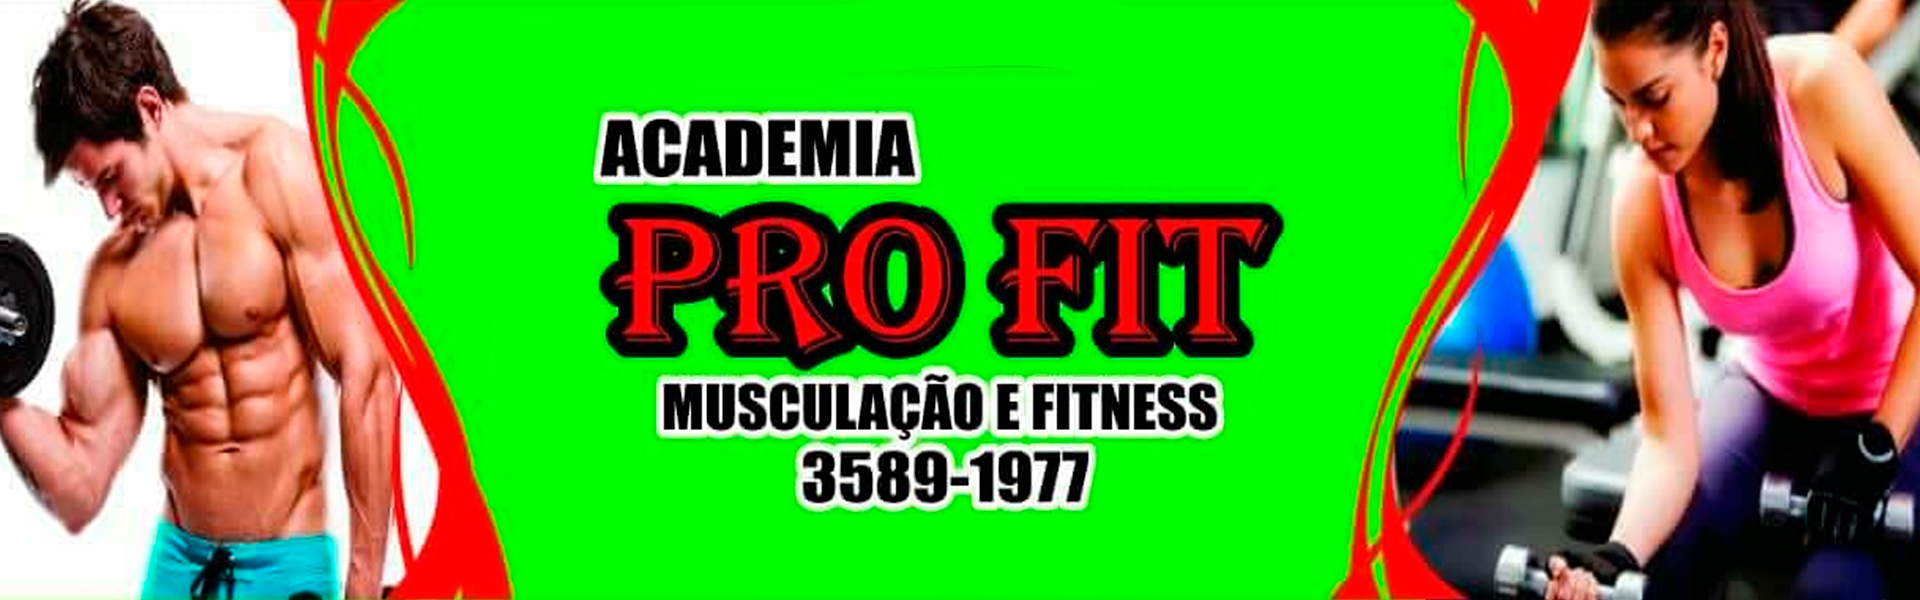 Pro Fitness Academia